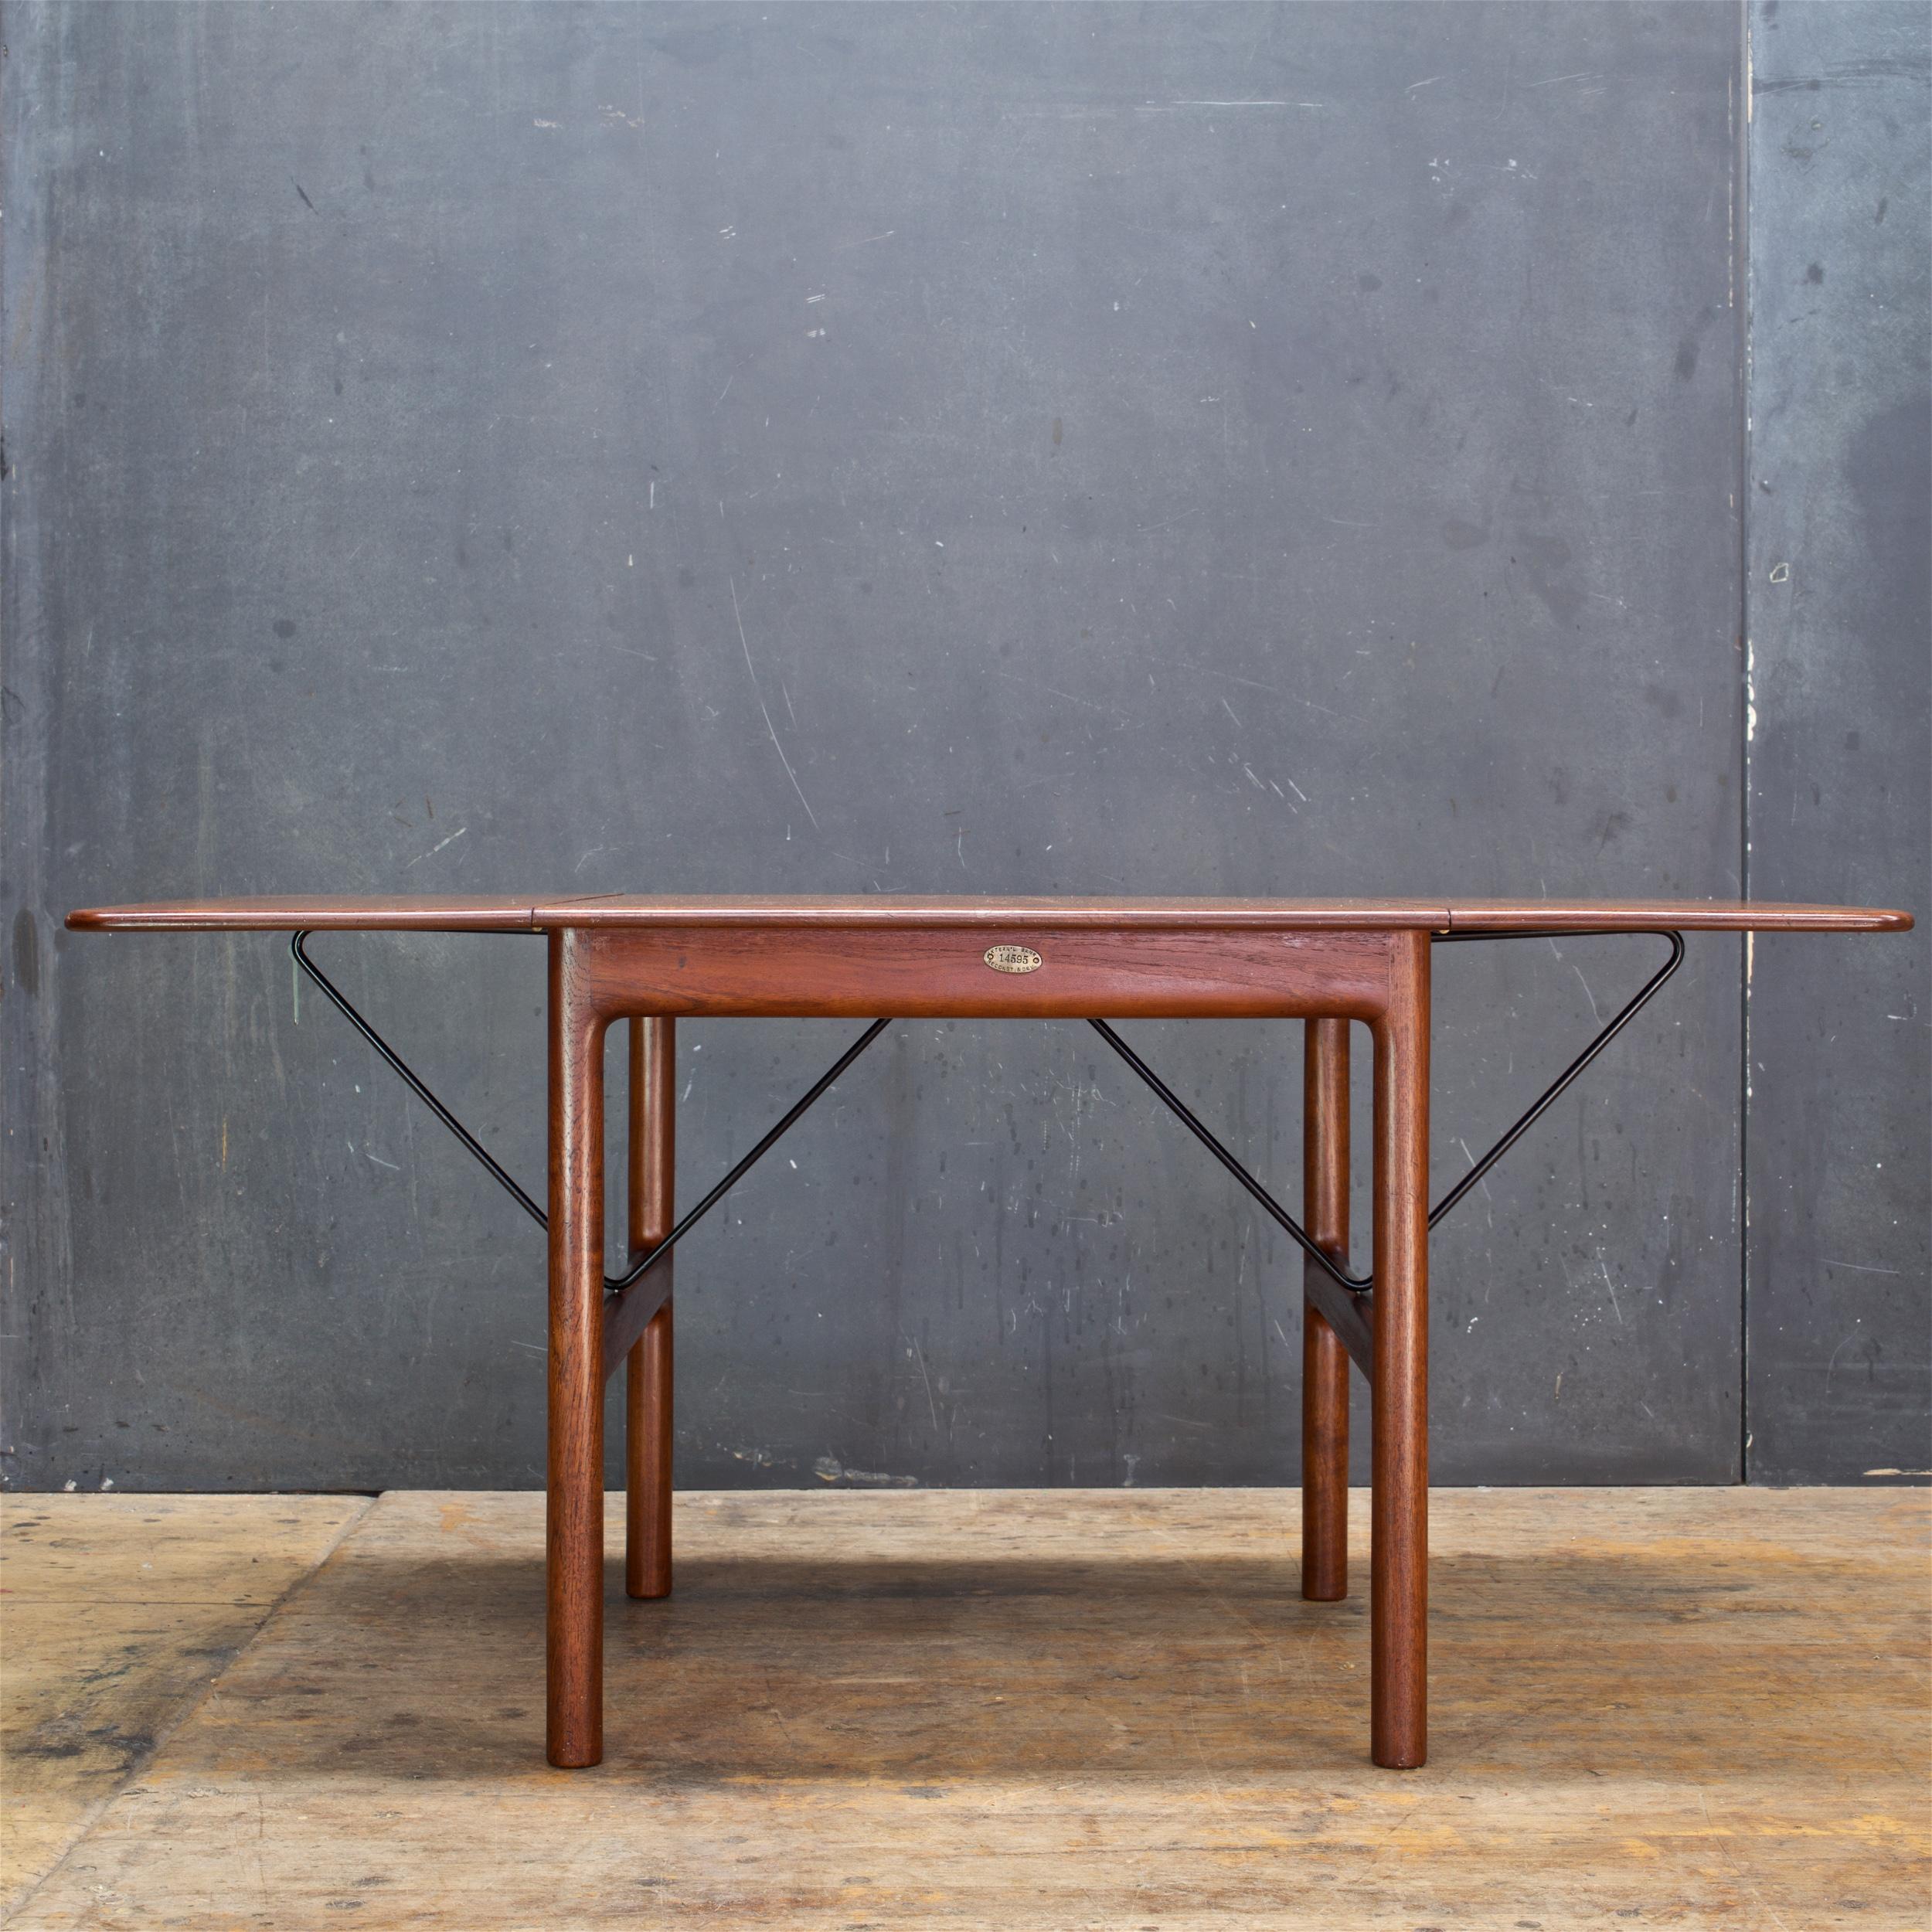 Seltener Tisch, mit schwenkbaren Dreiecken für Blattstützen. Entworfen von Madsen, Aksel Bender (1916-2000) & Larsen, Ejner( 1917-1987) für den Hersteller Willy Beck. Behält das Medaillon des Herstellers auf der Unterseite und das Inventarschild der